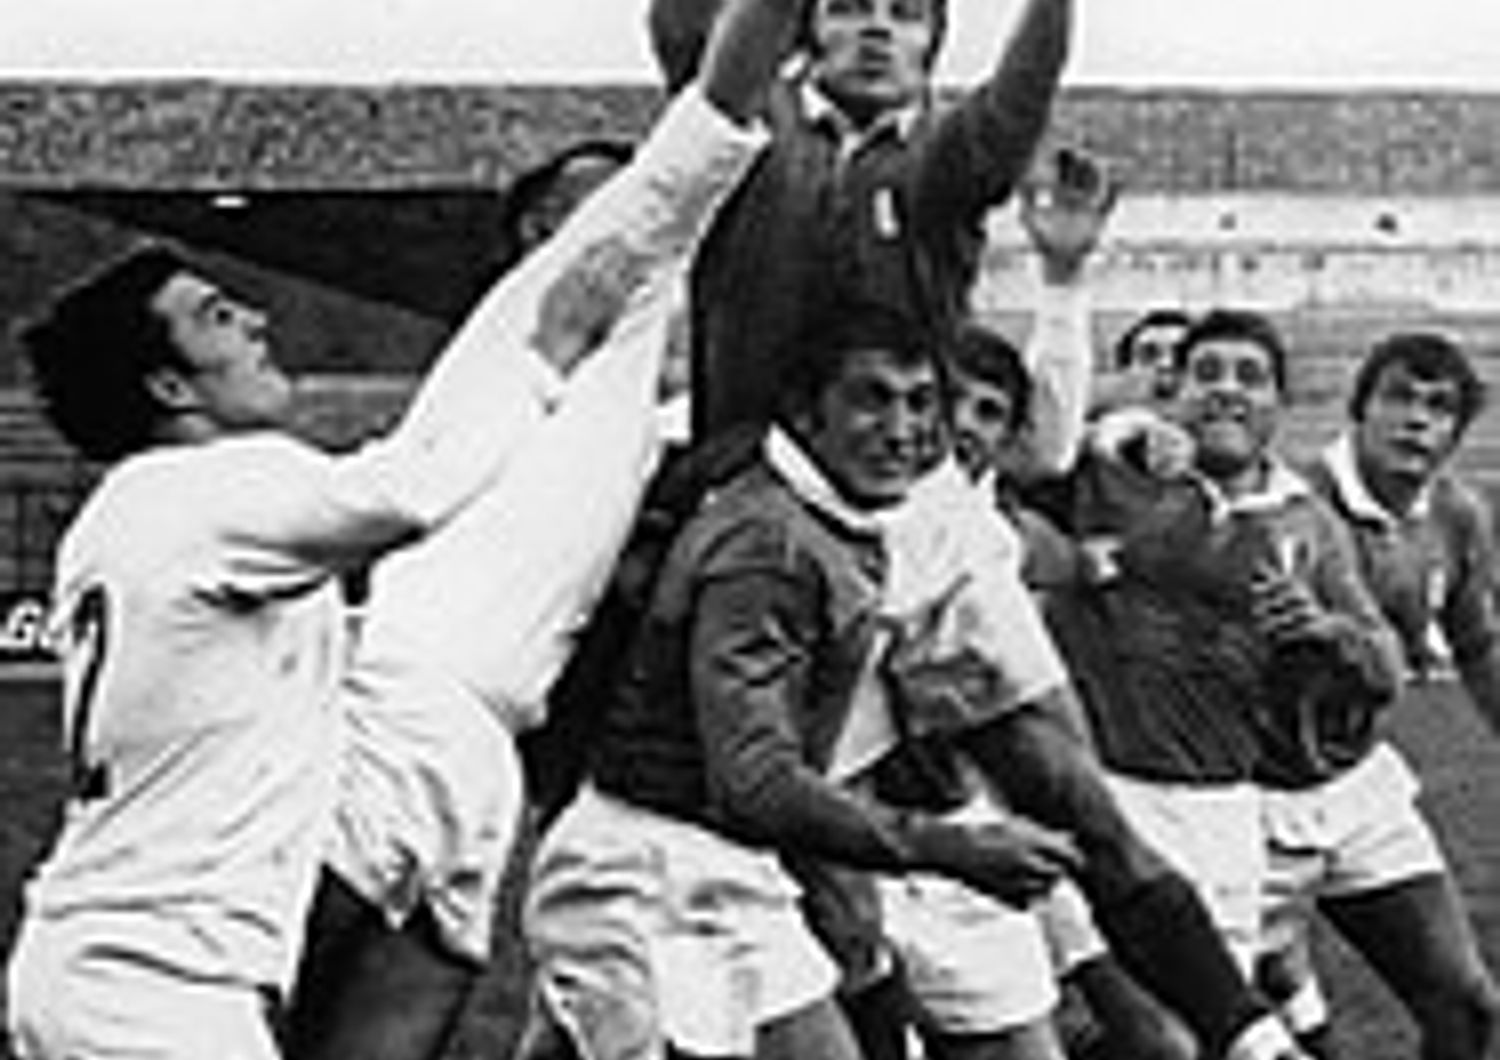 Massimo Bollesan (il pi&ugrave; in alto) durante una partita contro la Germania Ovest nel 1968